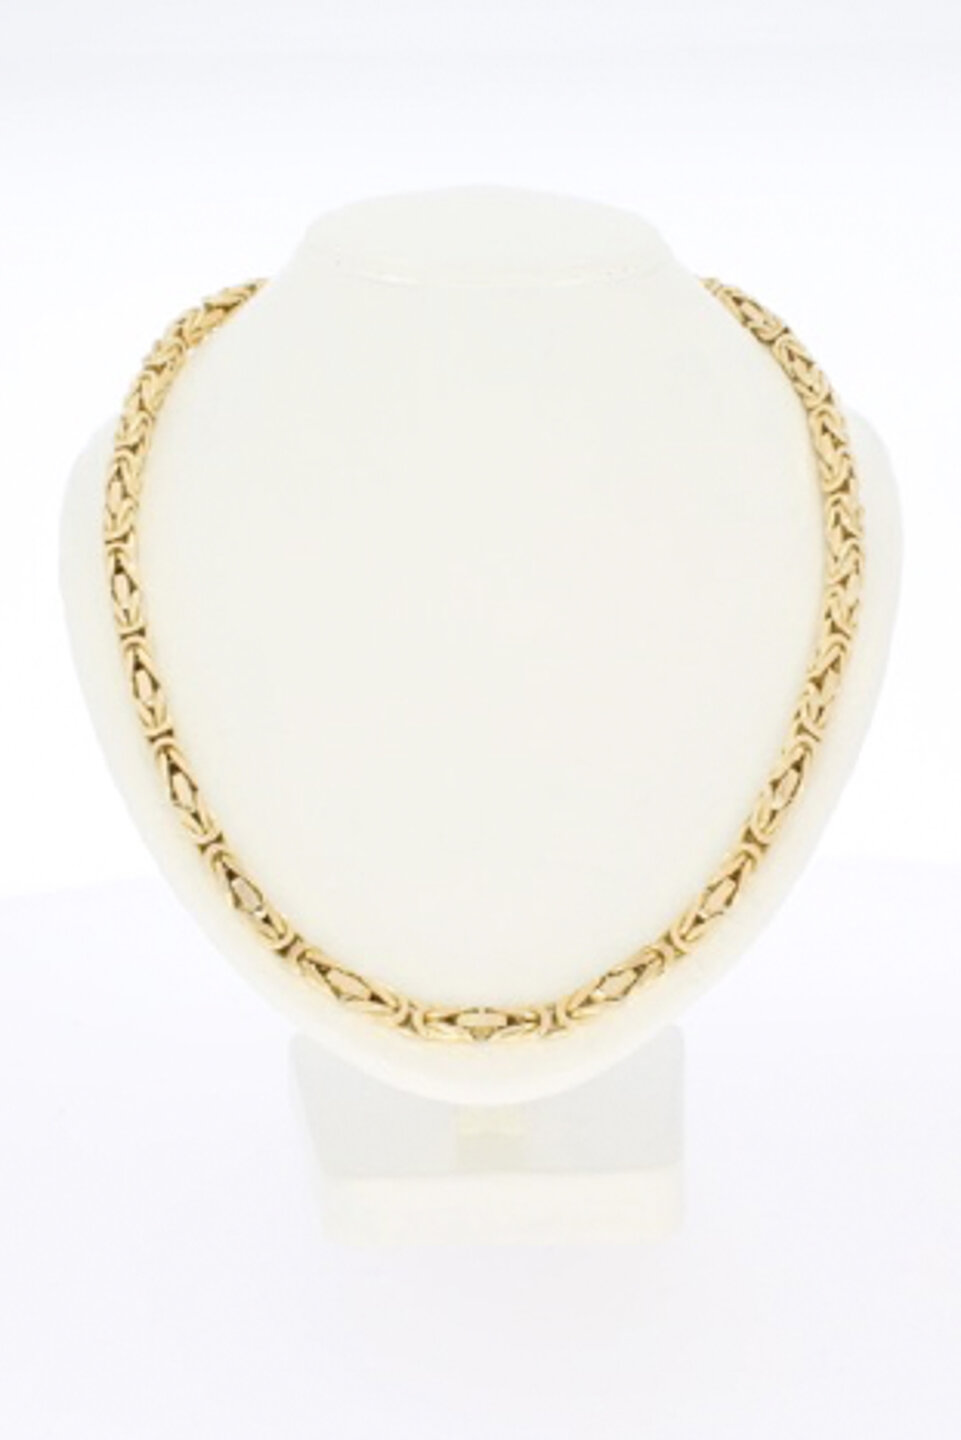 14 Karat Gold Halskette des byzantinischen Königs - 46 cm